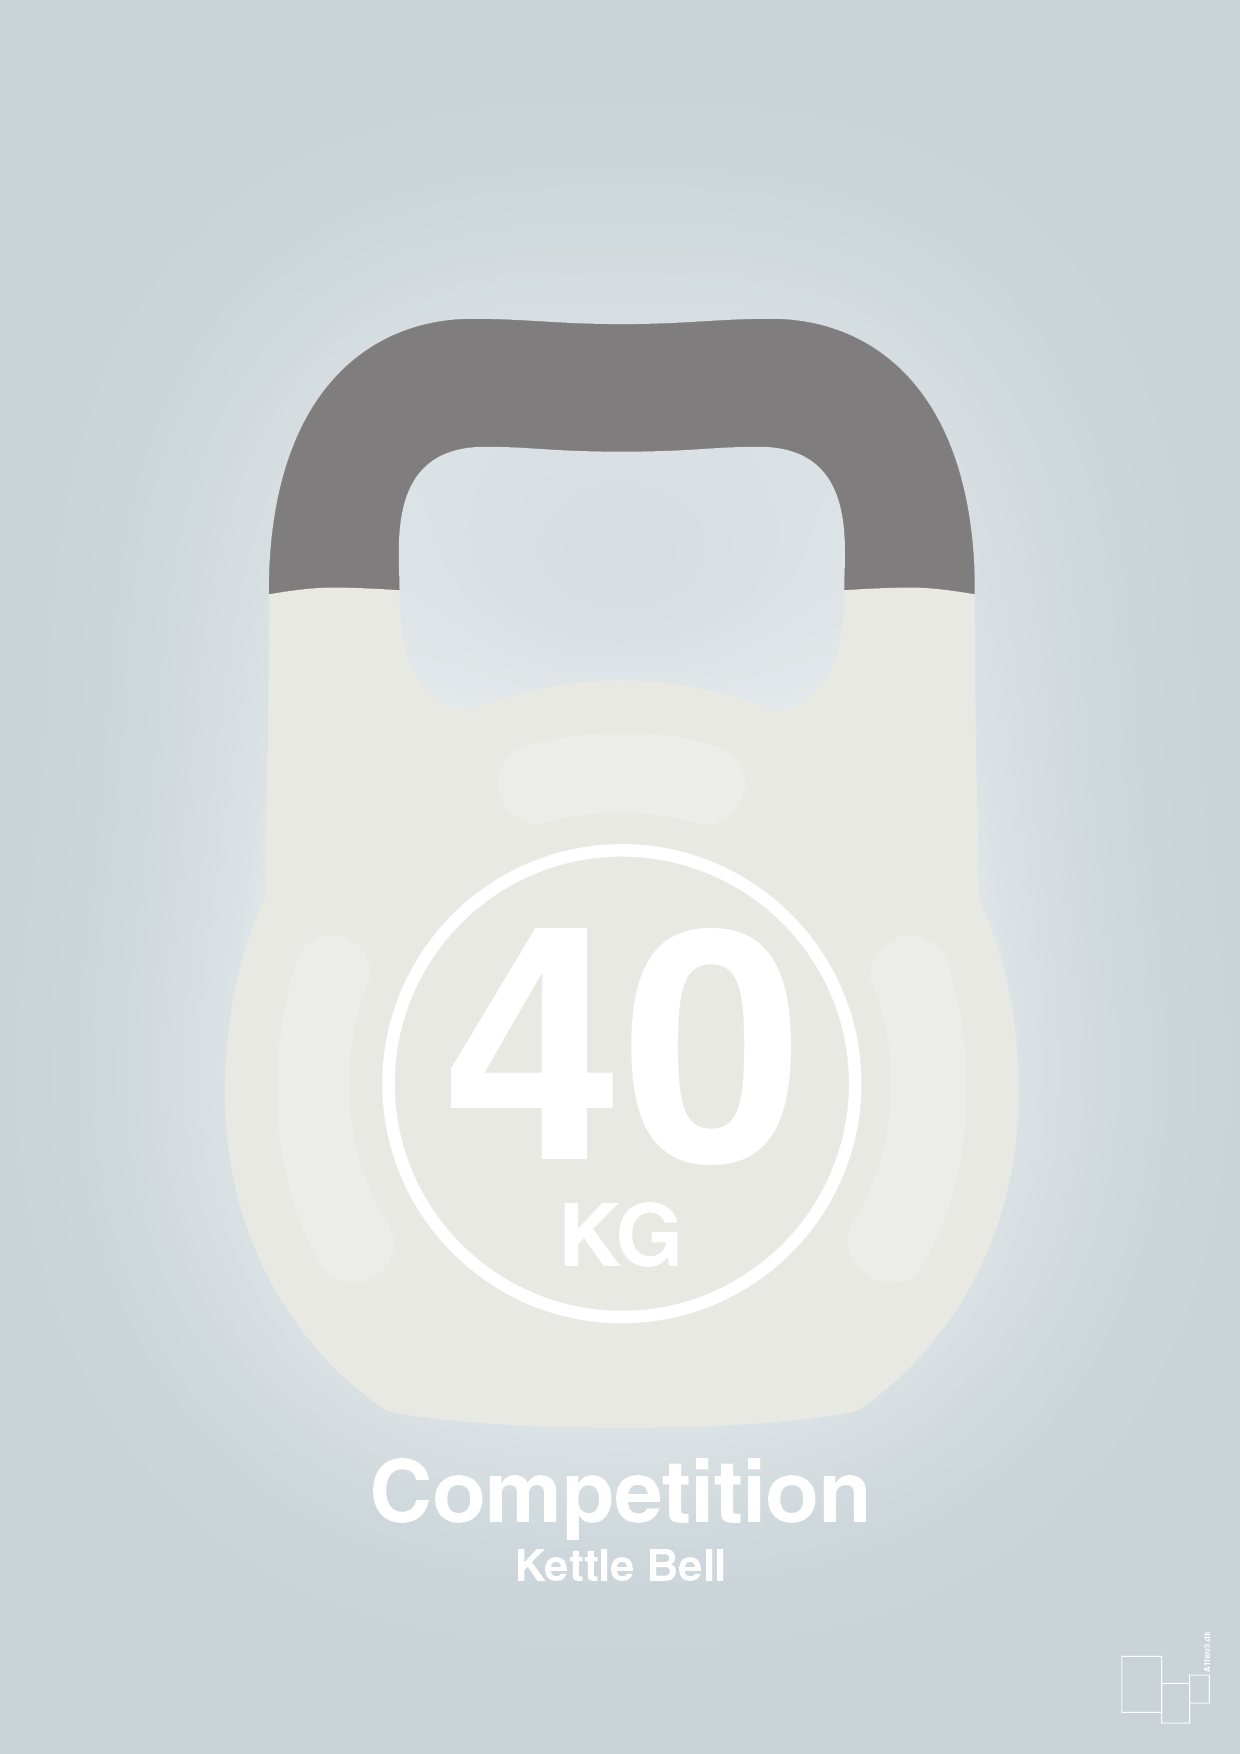 kettle bell 40 kg - competition color - Plakat med Grafik i Light Drizzle